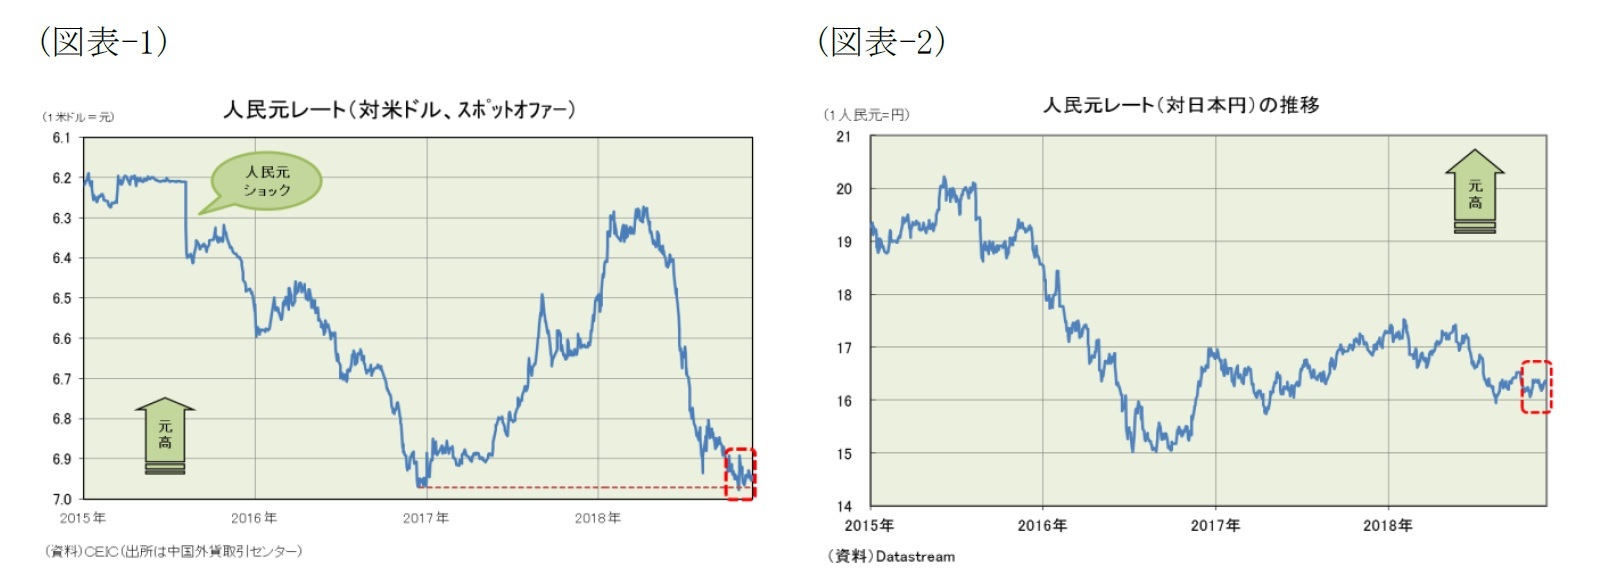 (図表-1)人民元レート（対米ドル、スポットオファー）/(図表-1)人民元レート（対日本円）の推移